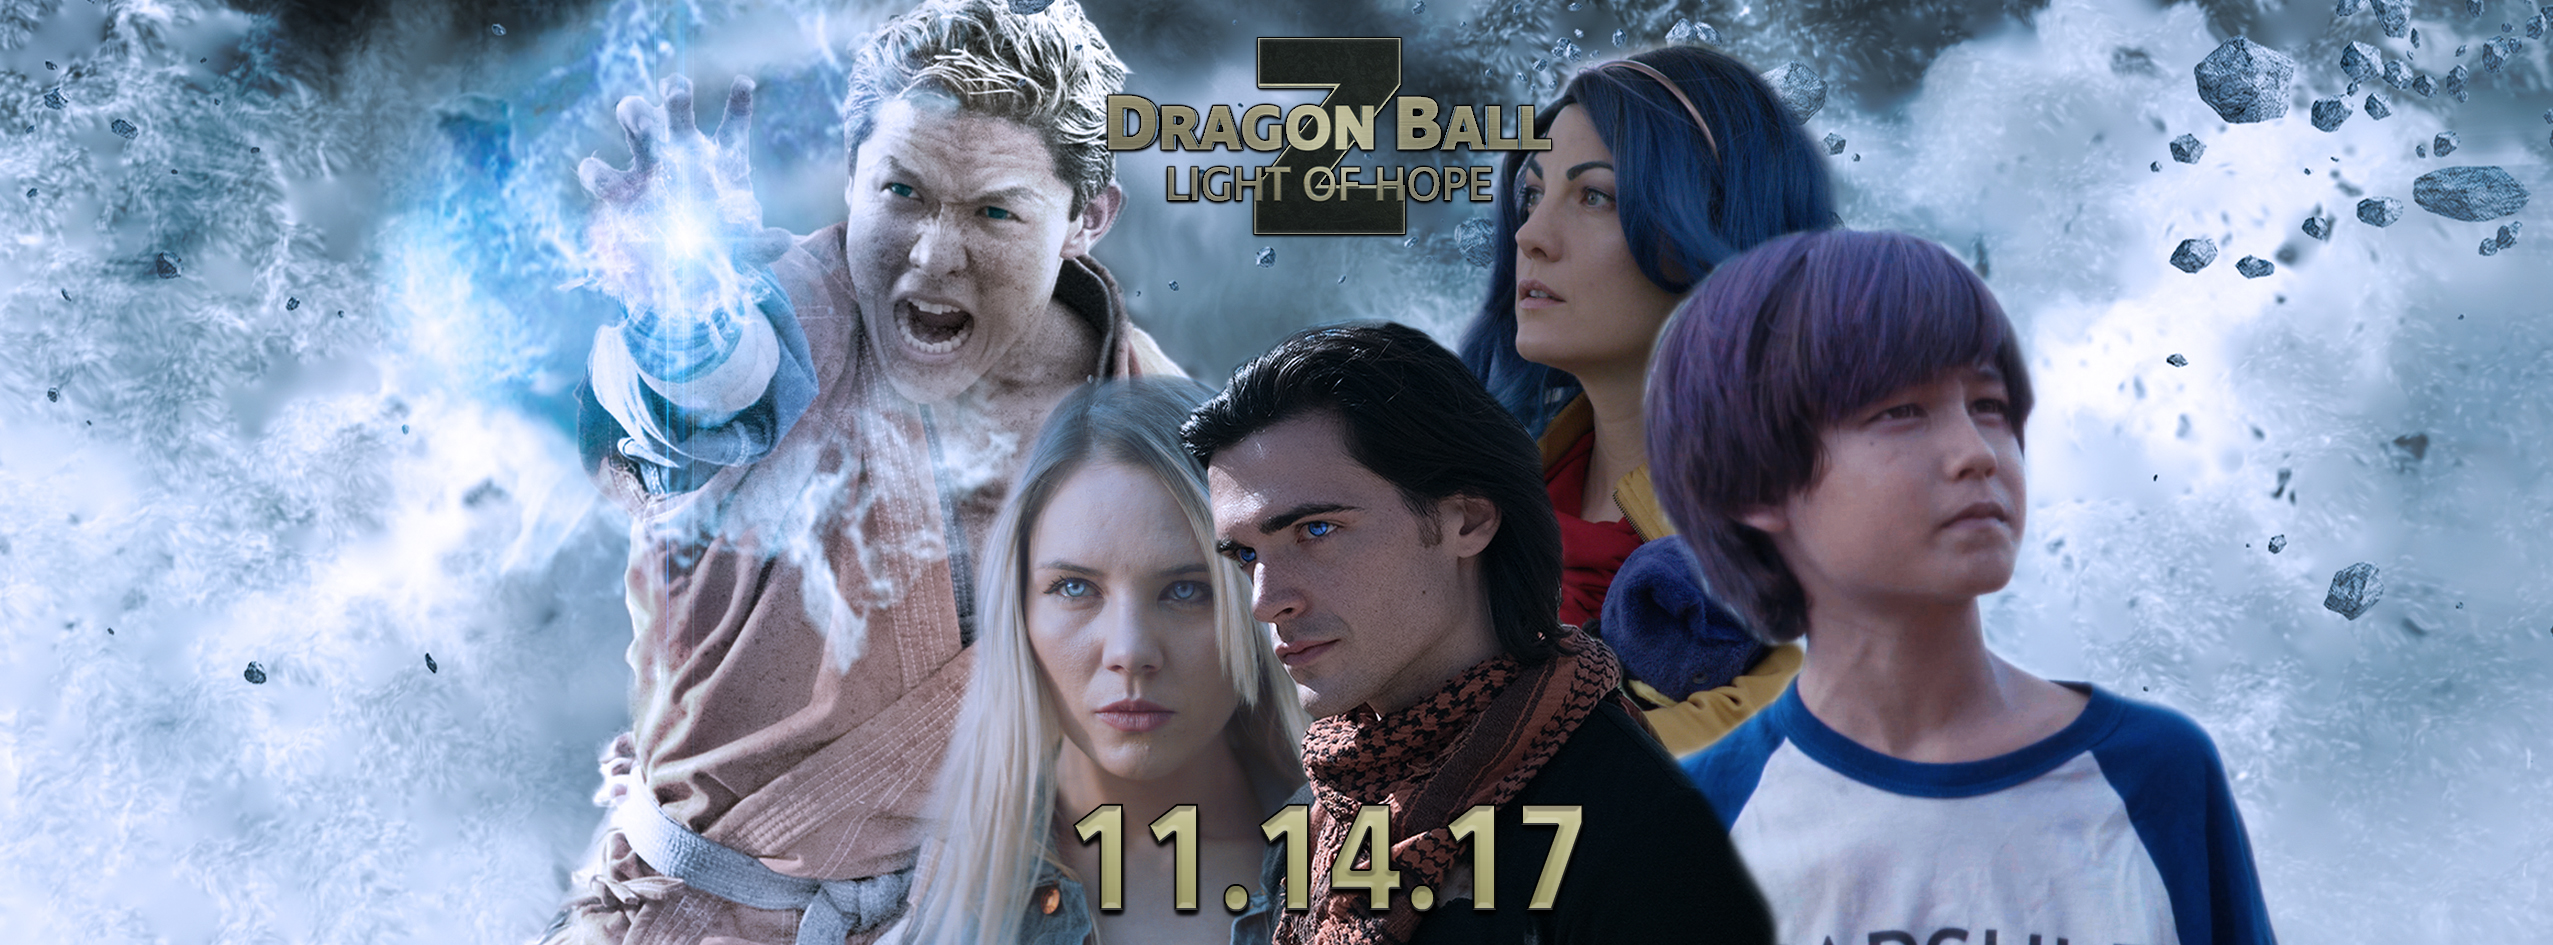 Filme live action Dragon Ball Z: Light of Hope finalmente é lançado.  Assista! – Fatos Desconhecidos